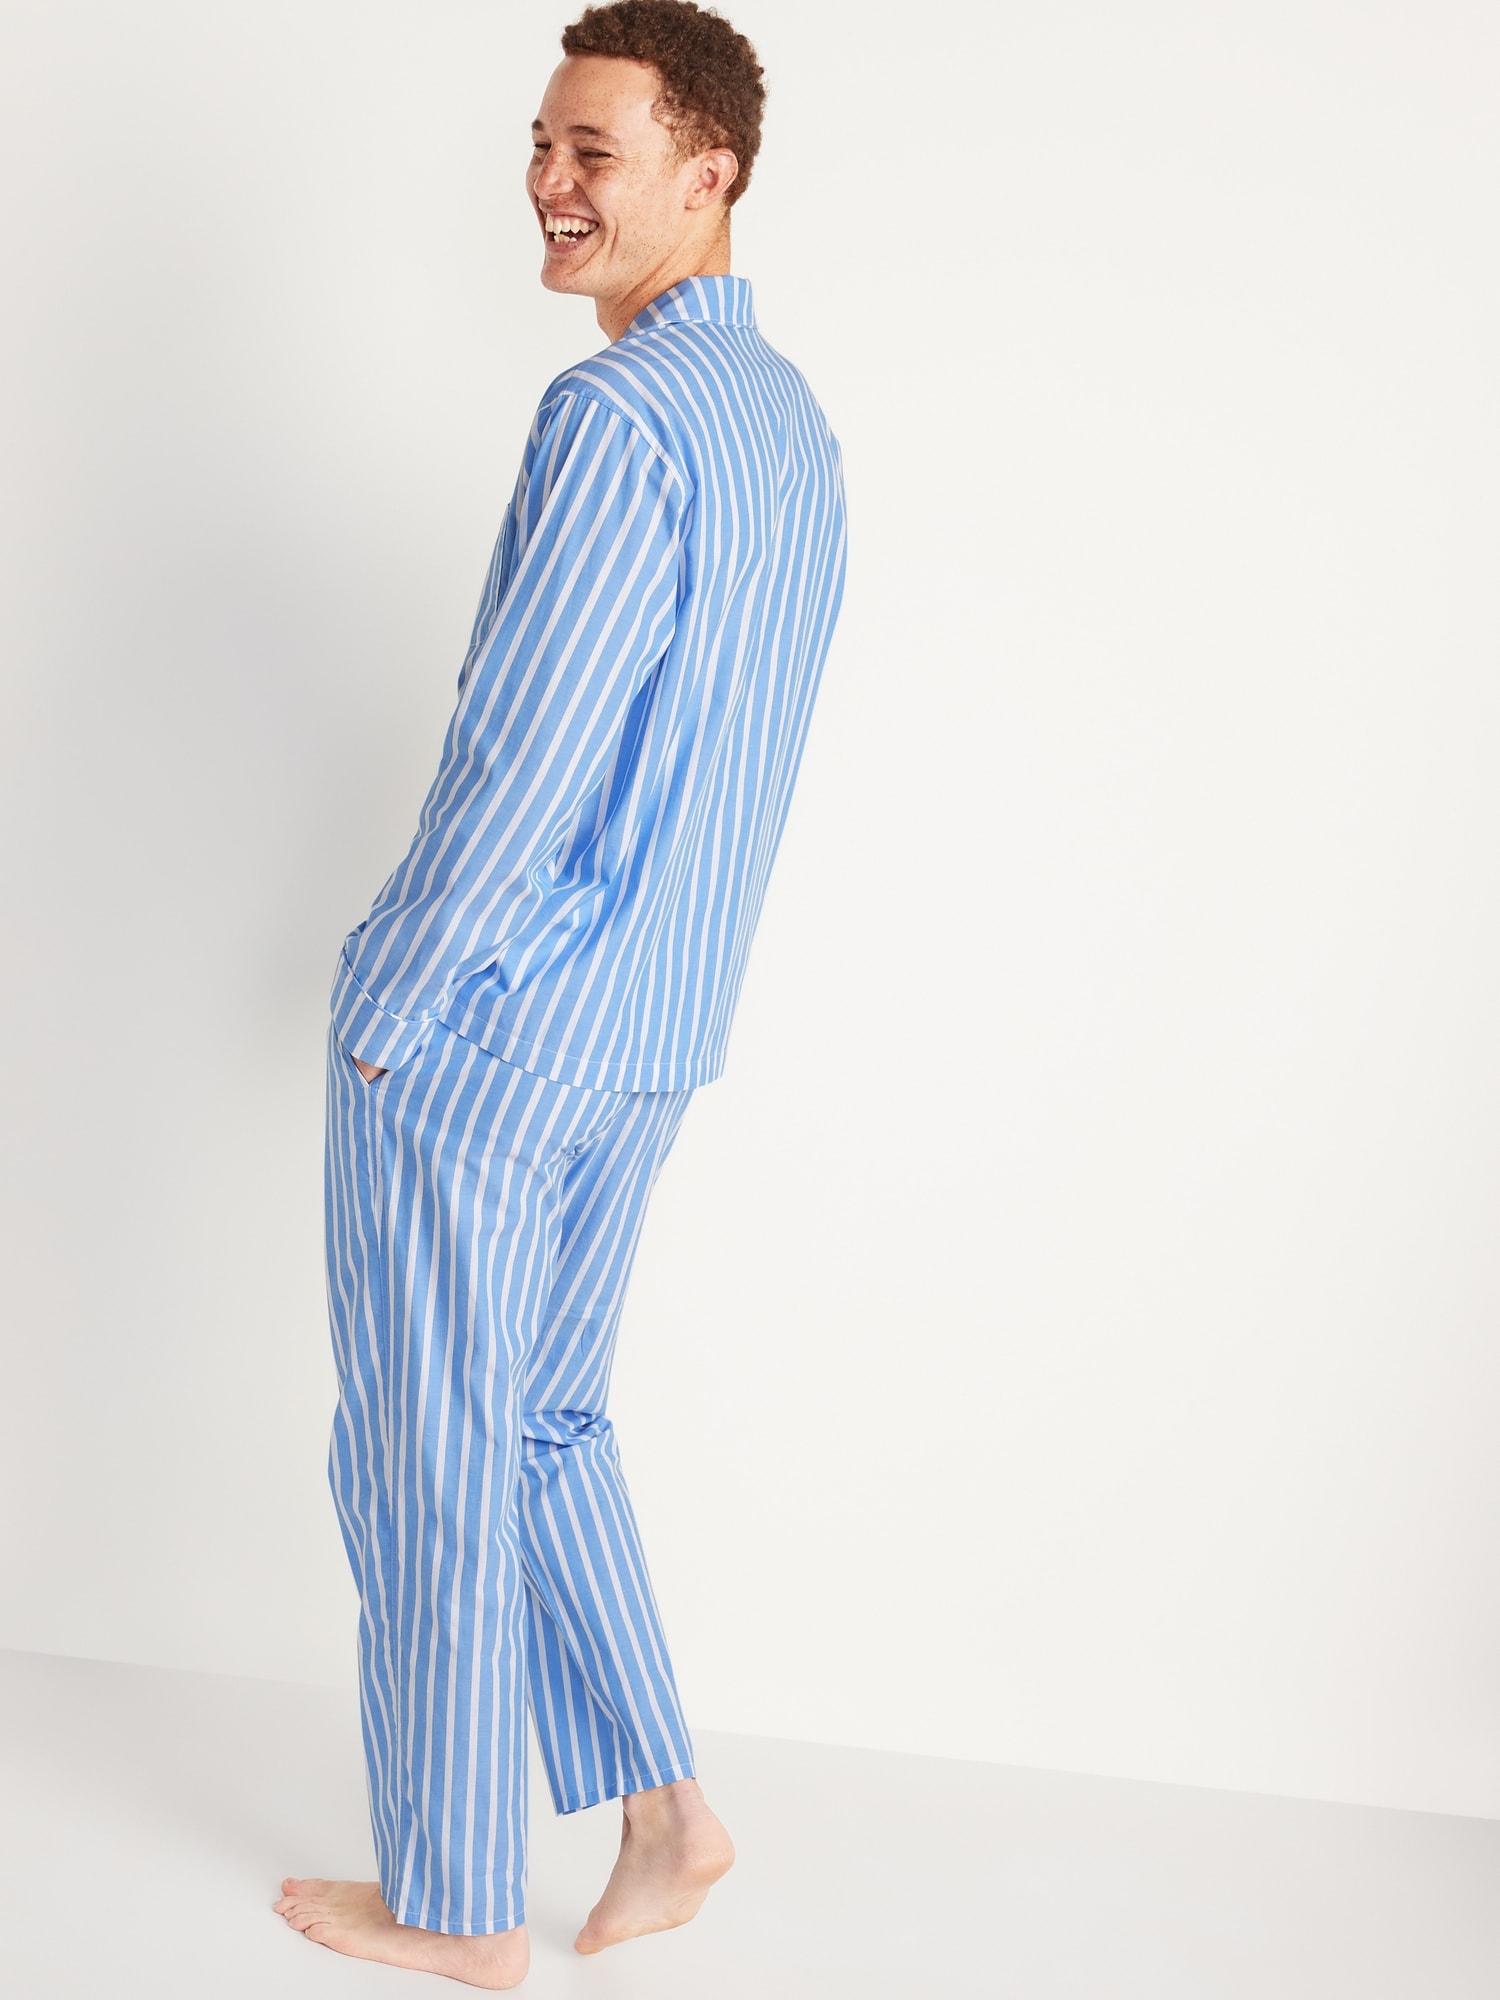 Striped Poplin Pajamas Set for Men | Old Navy